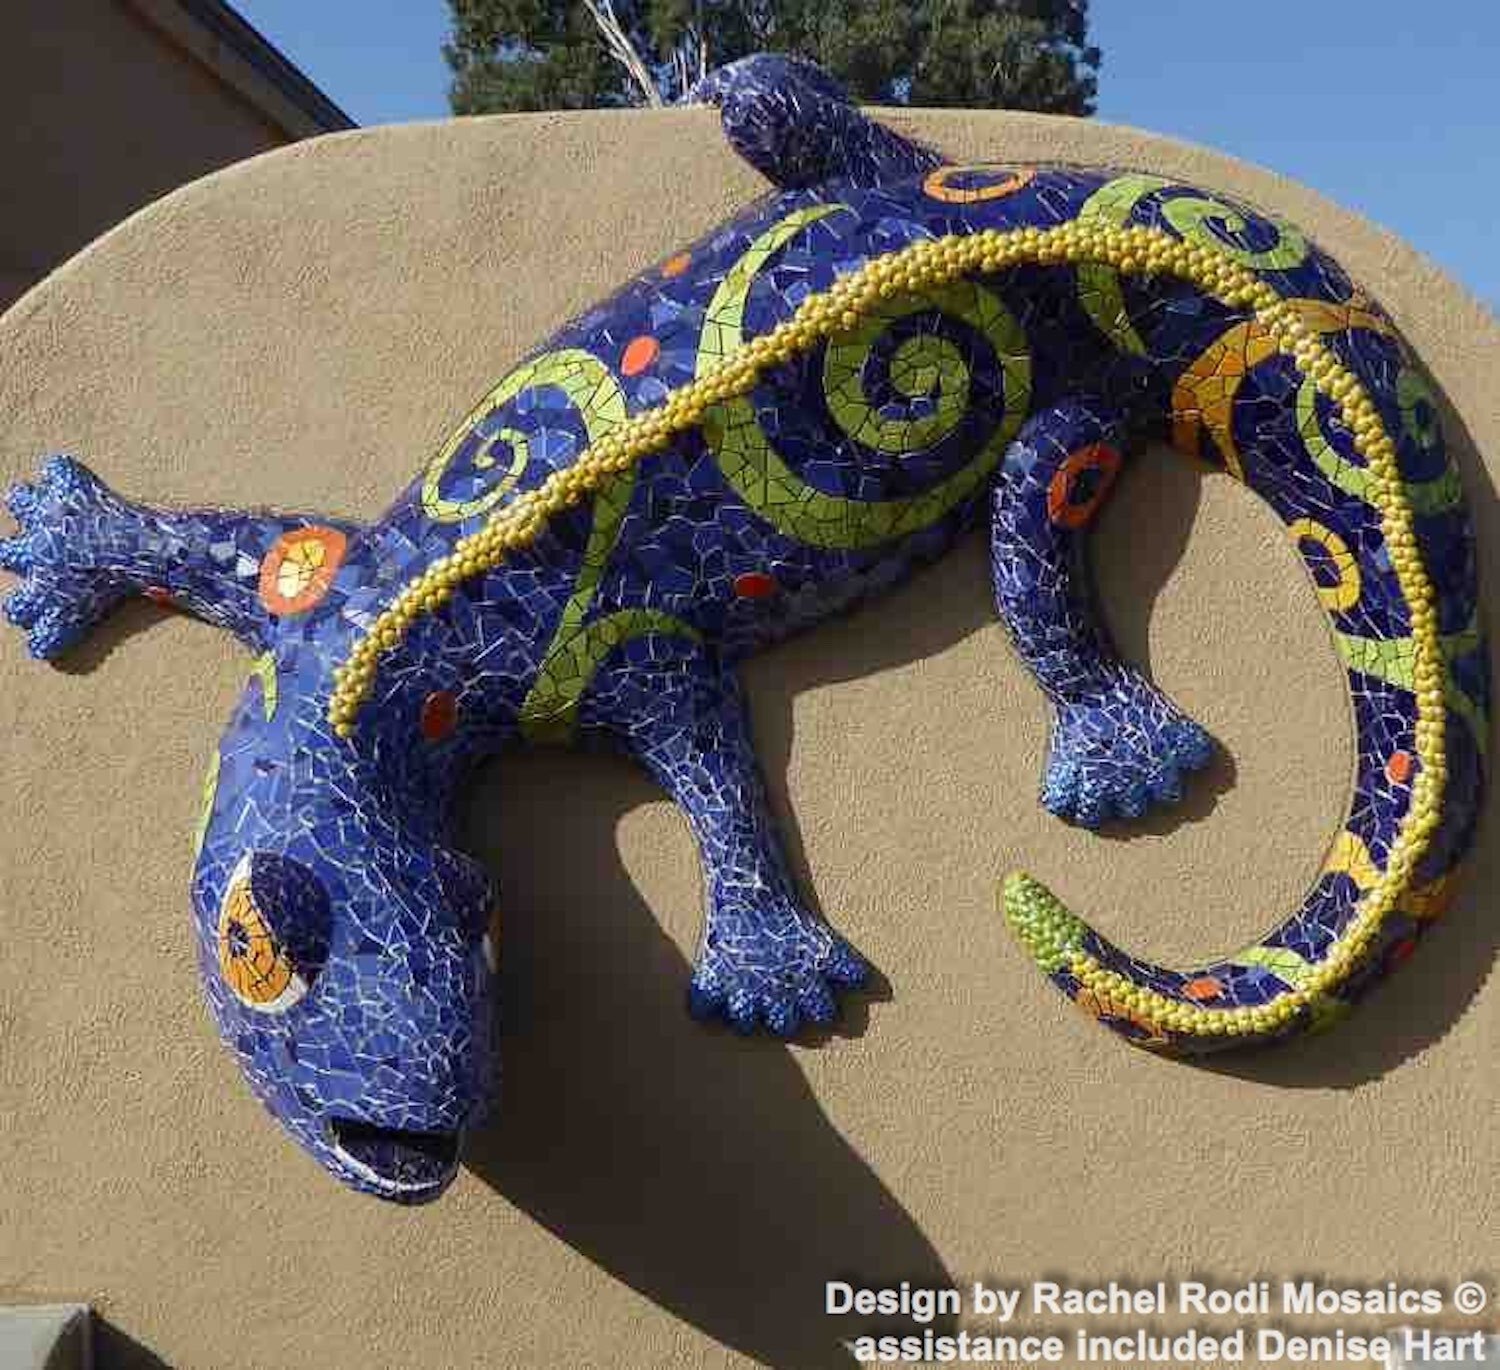 Lizard sculpture mosaic, tile